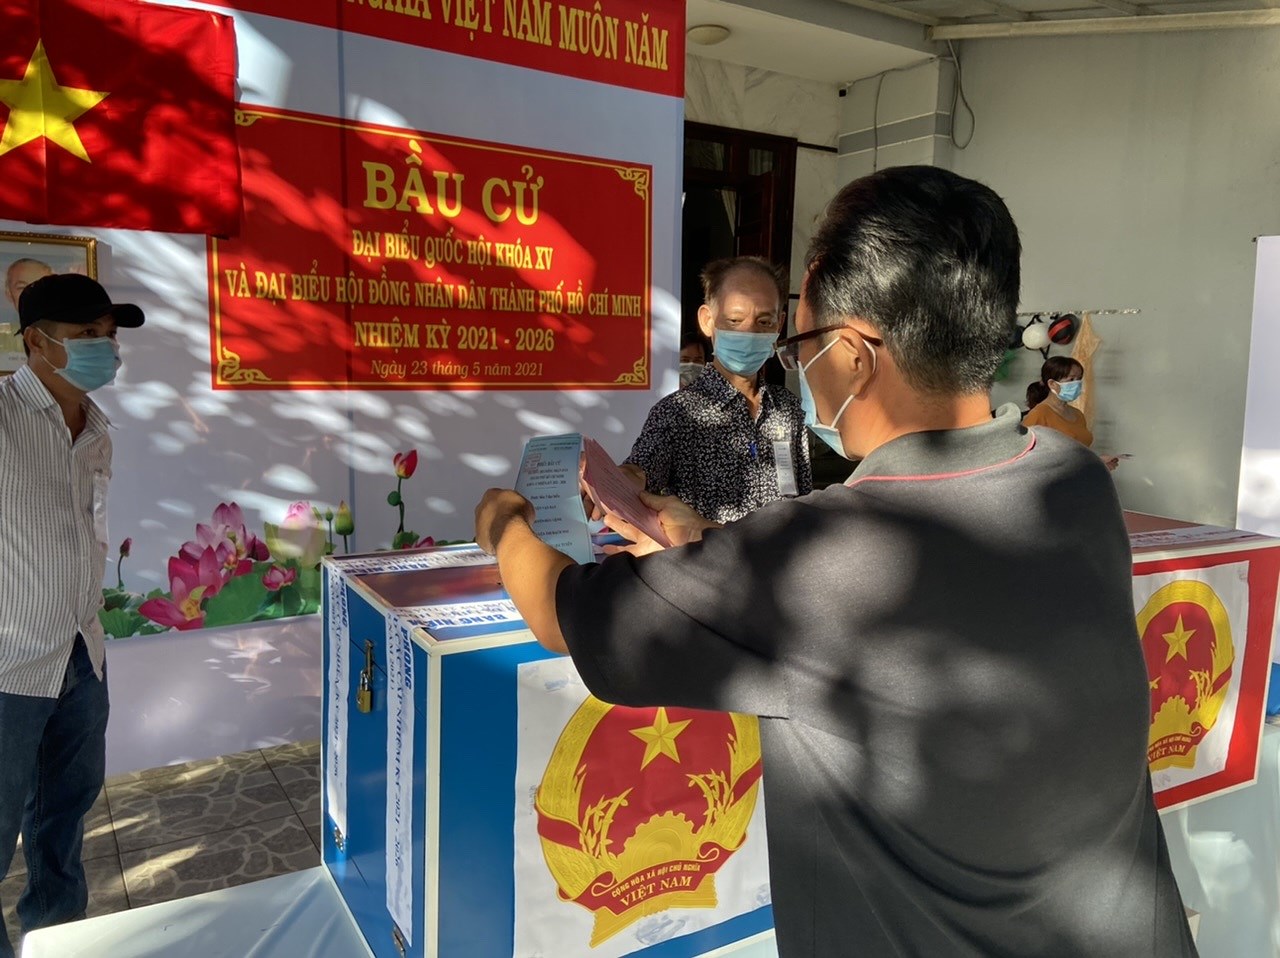 CSGT TP Ho Chi Minh ra quan dam bao an ninh trong ngay bau cu hinh anh 7